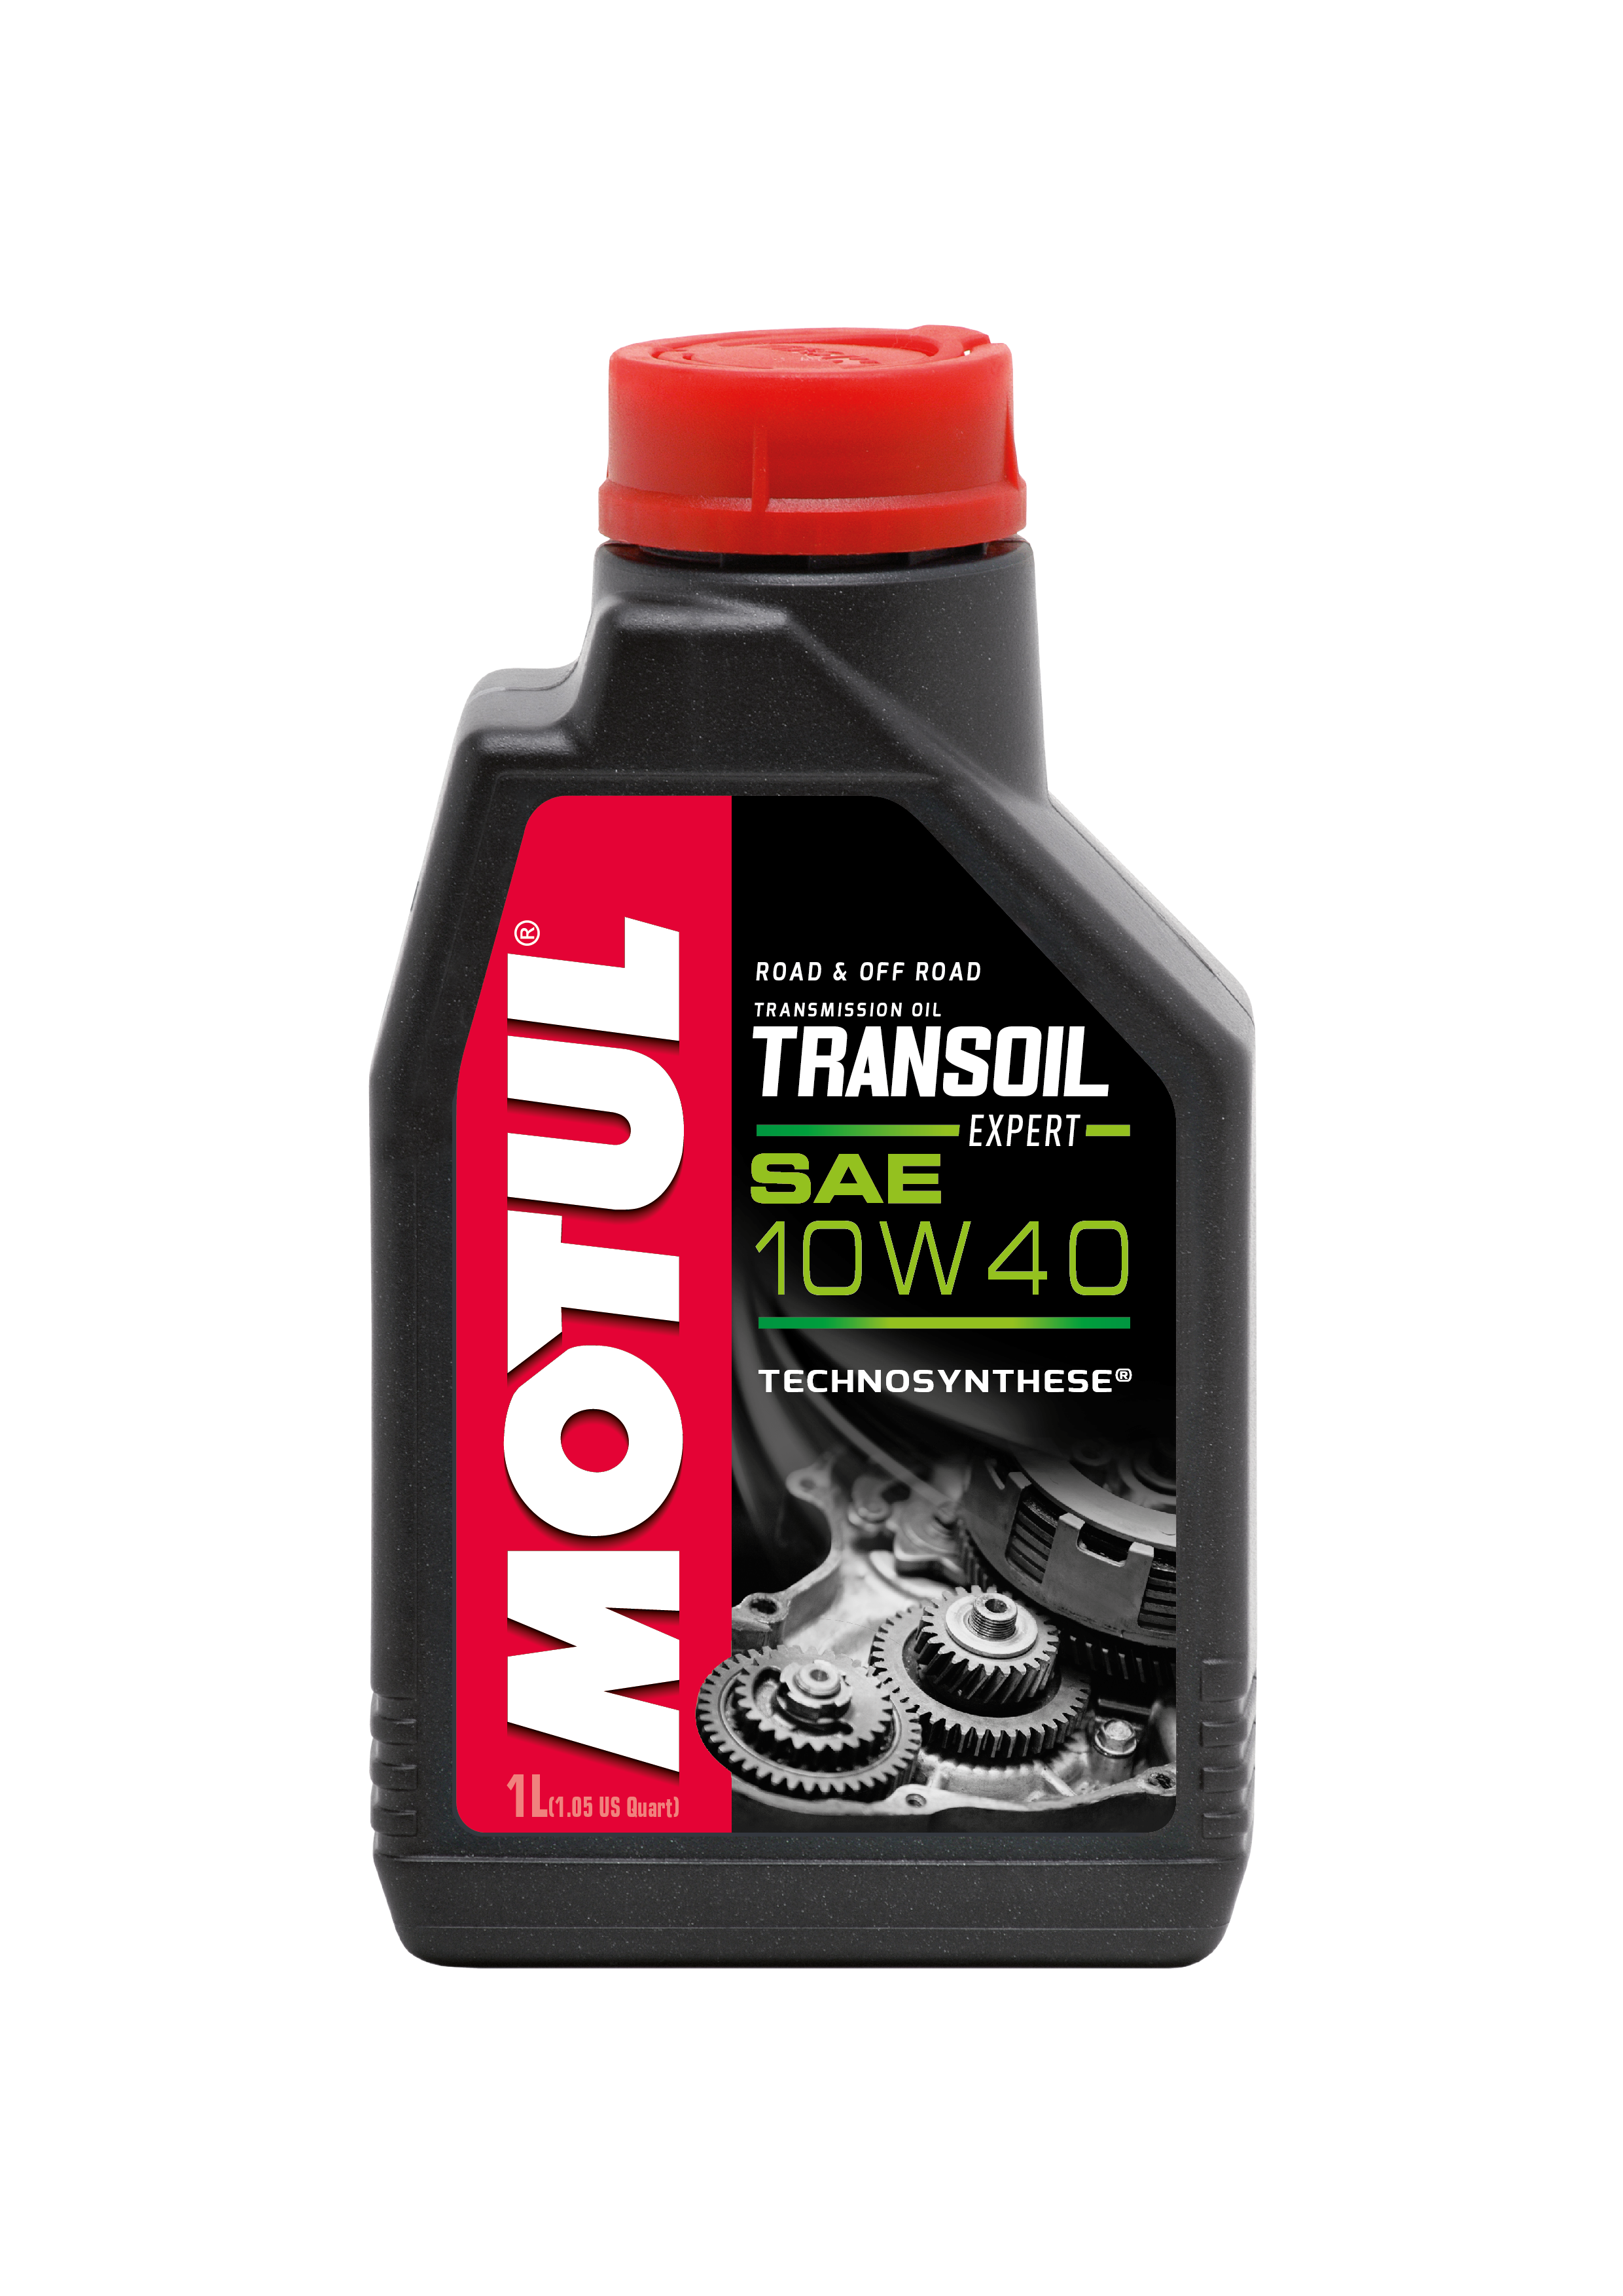 MOTUL MOTUL TRANSOIL EXPERT 10W40 - 1L - Transmission fluid